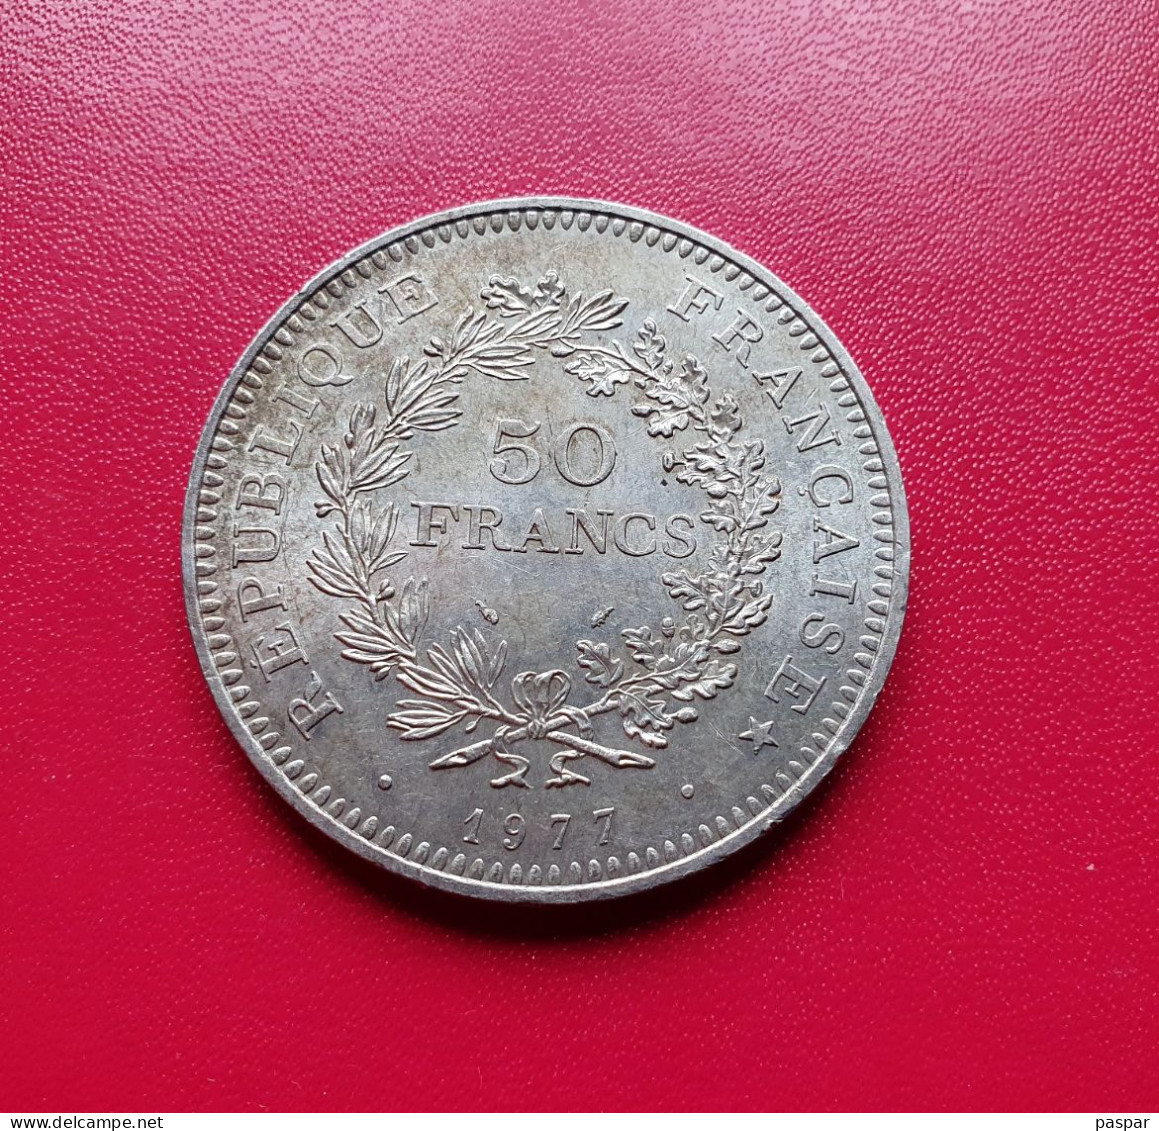 France 50 Francs Hercule En Argent 1977 - Gad 882 - 50 Francs